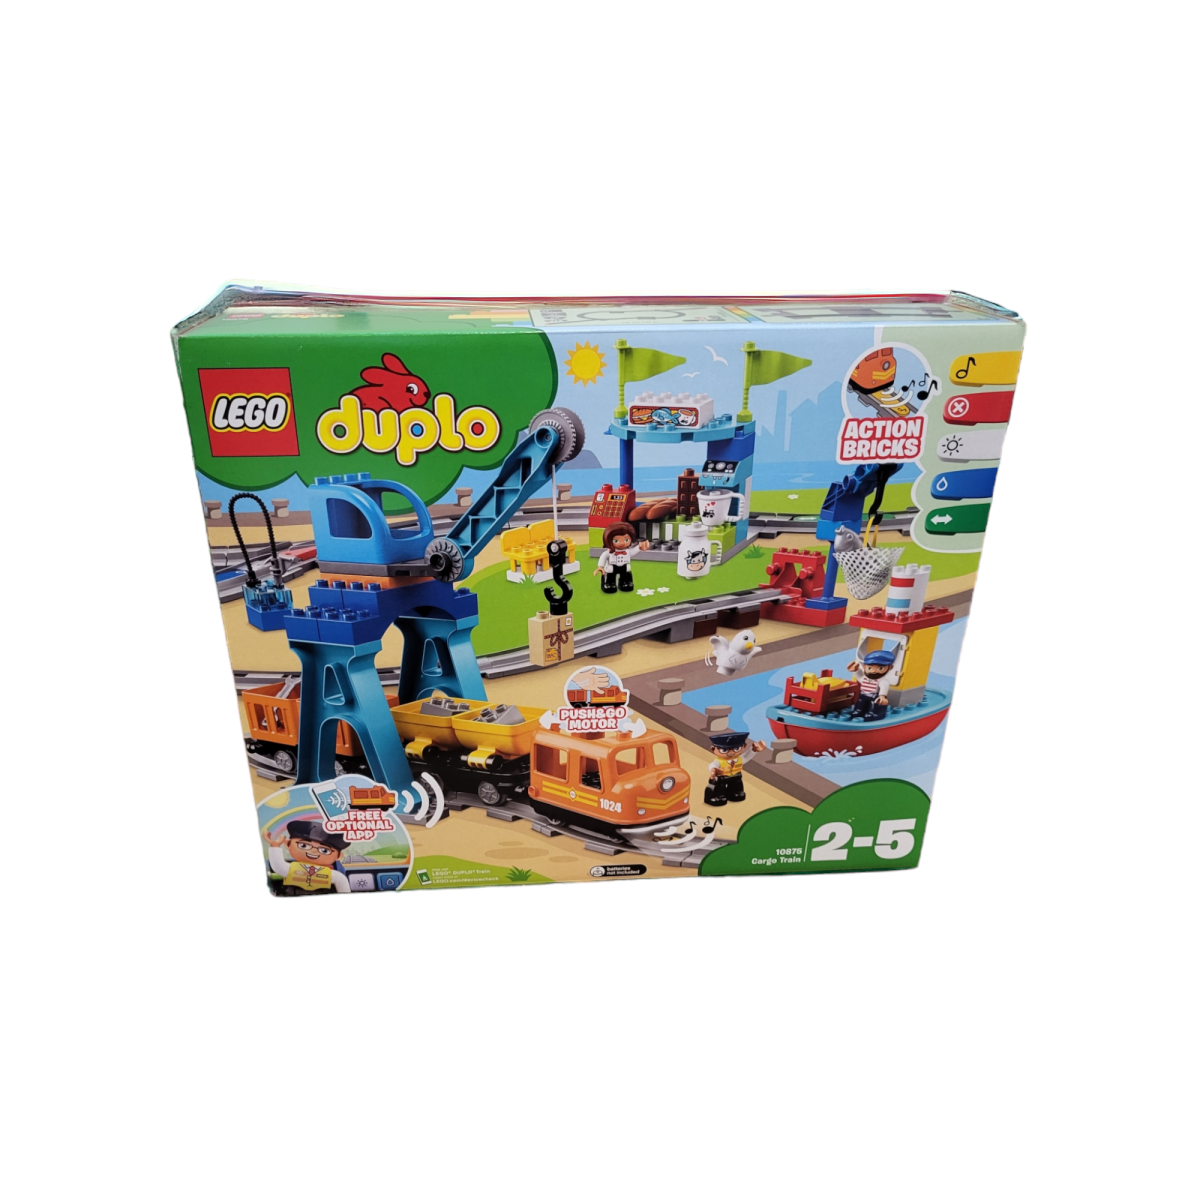 LEGO DUPLO Güterzug, Push & Go Lok mit Lichtern und Geräuschen 2-5 Jahren